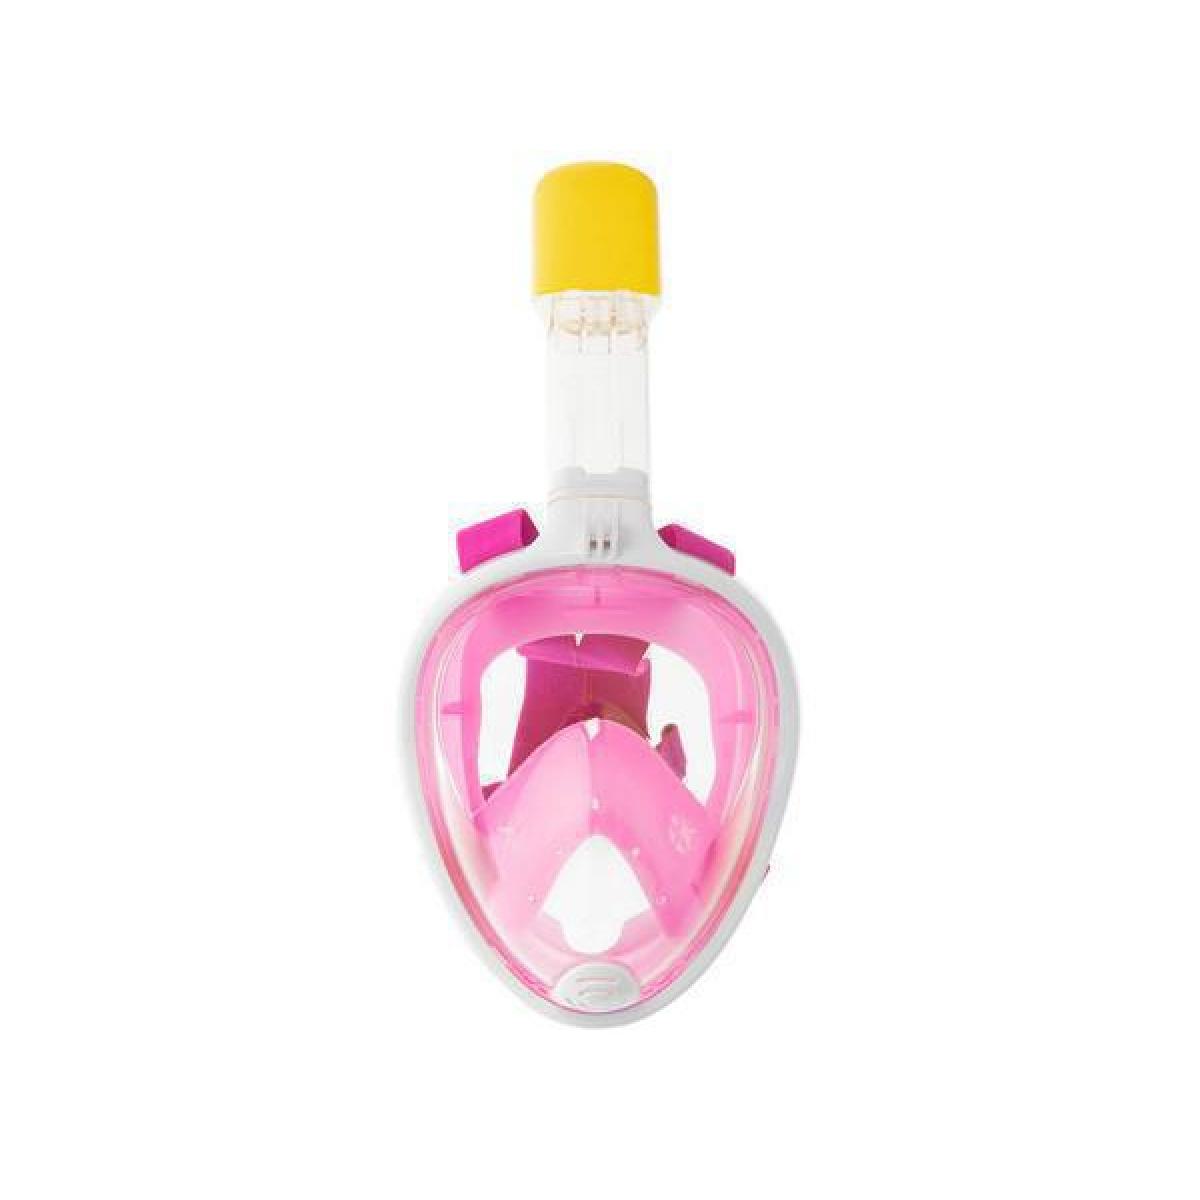 Μάσκα Θαλάσσης Full Face Με Ενσωματωμένο  Αναπνευστήρα Ροζ Παιδική Small/Medium